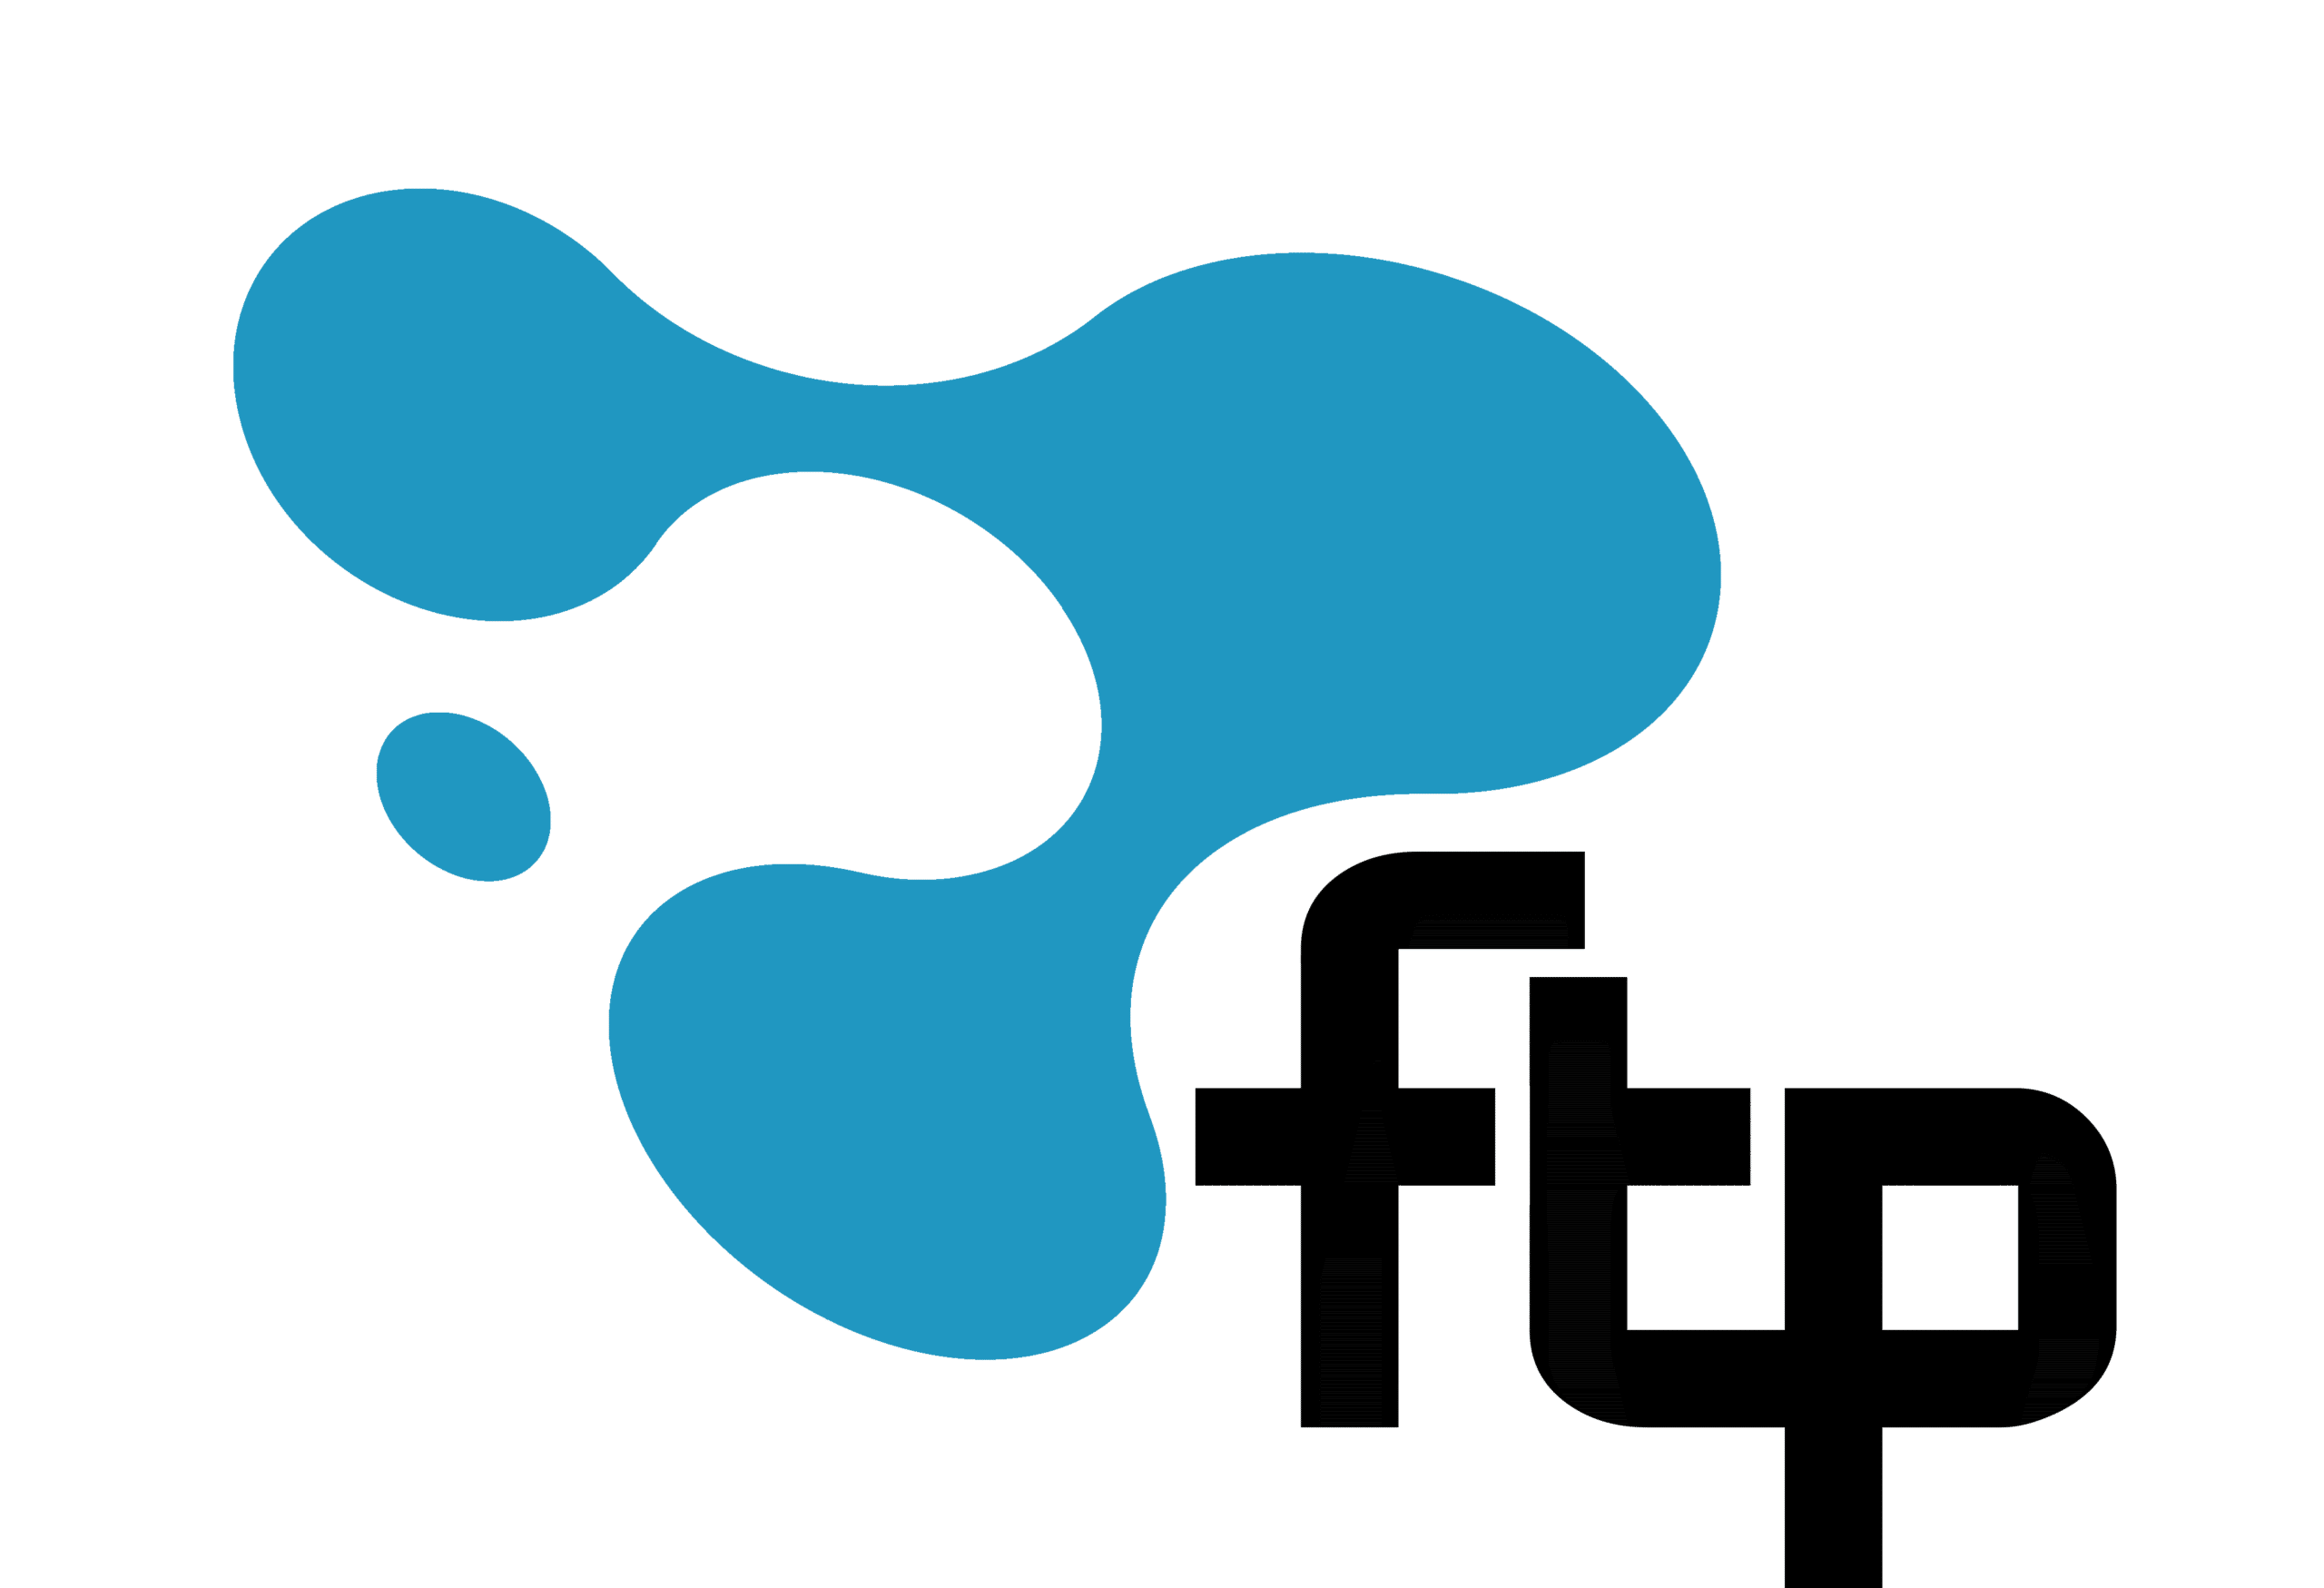 FTP - Soluções Empresariais